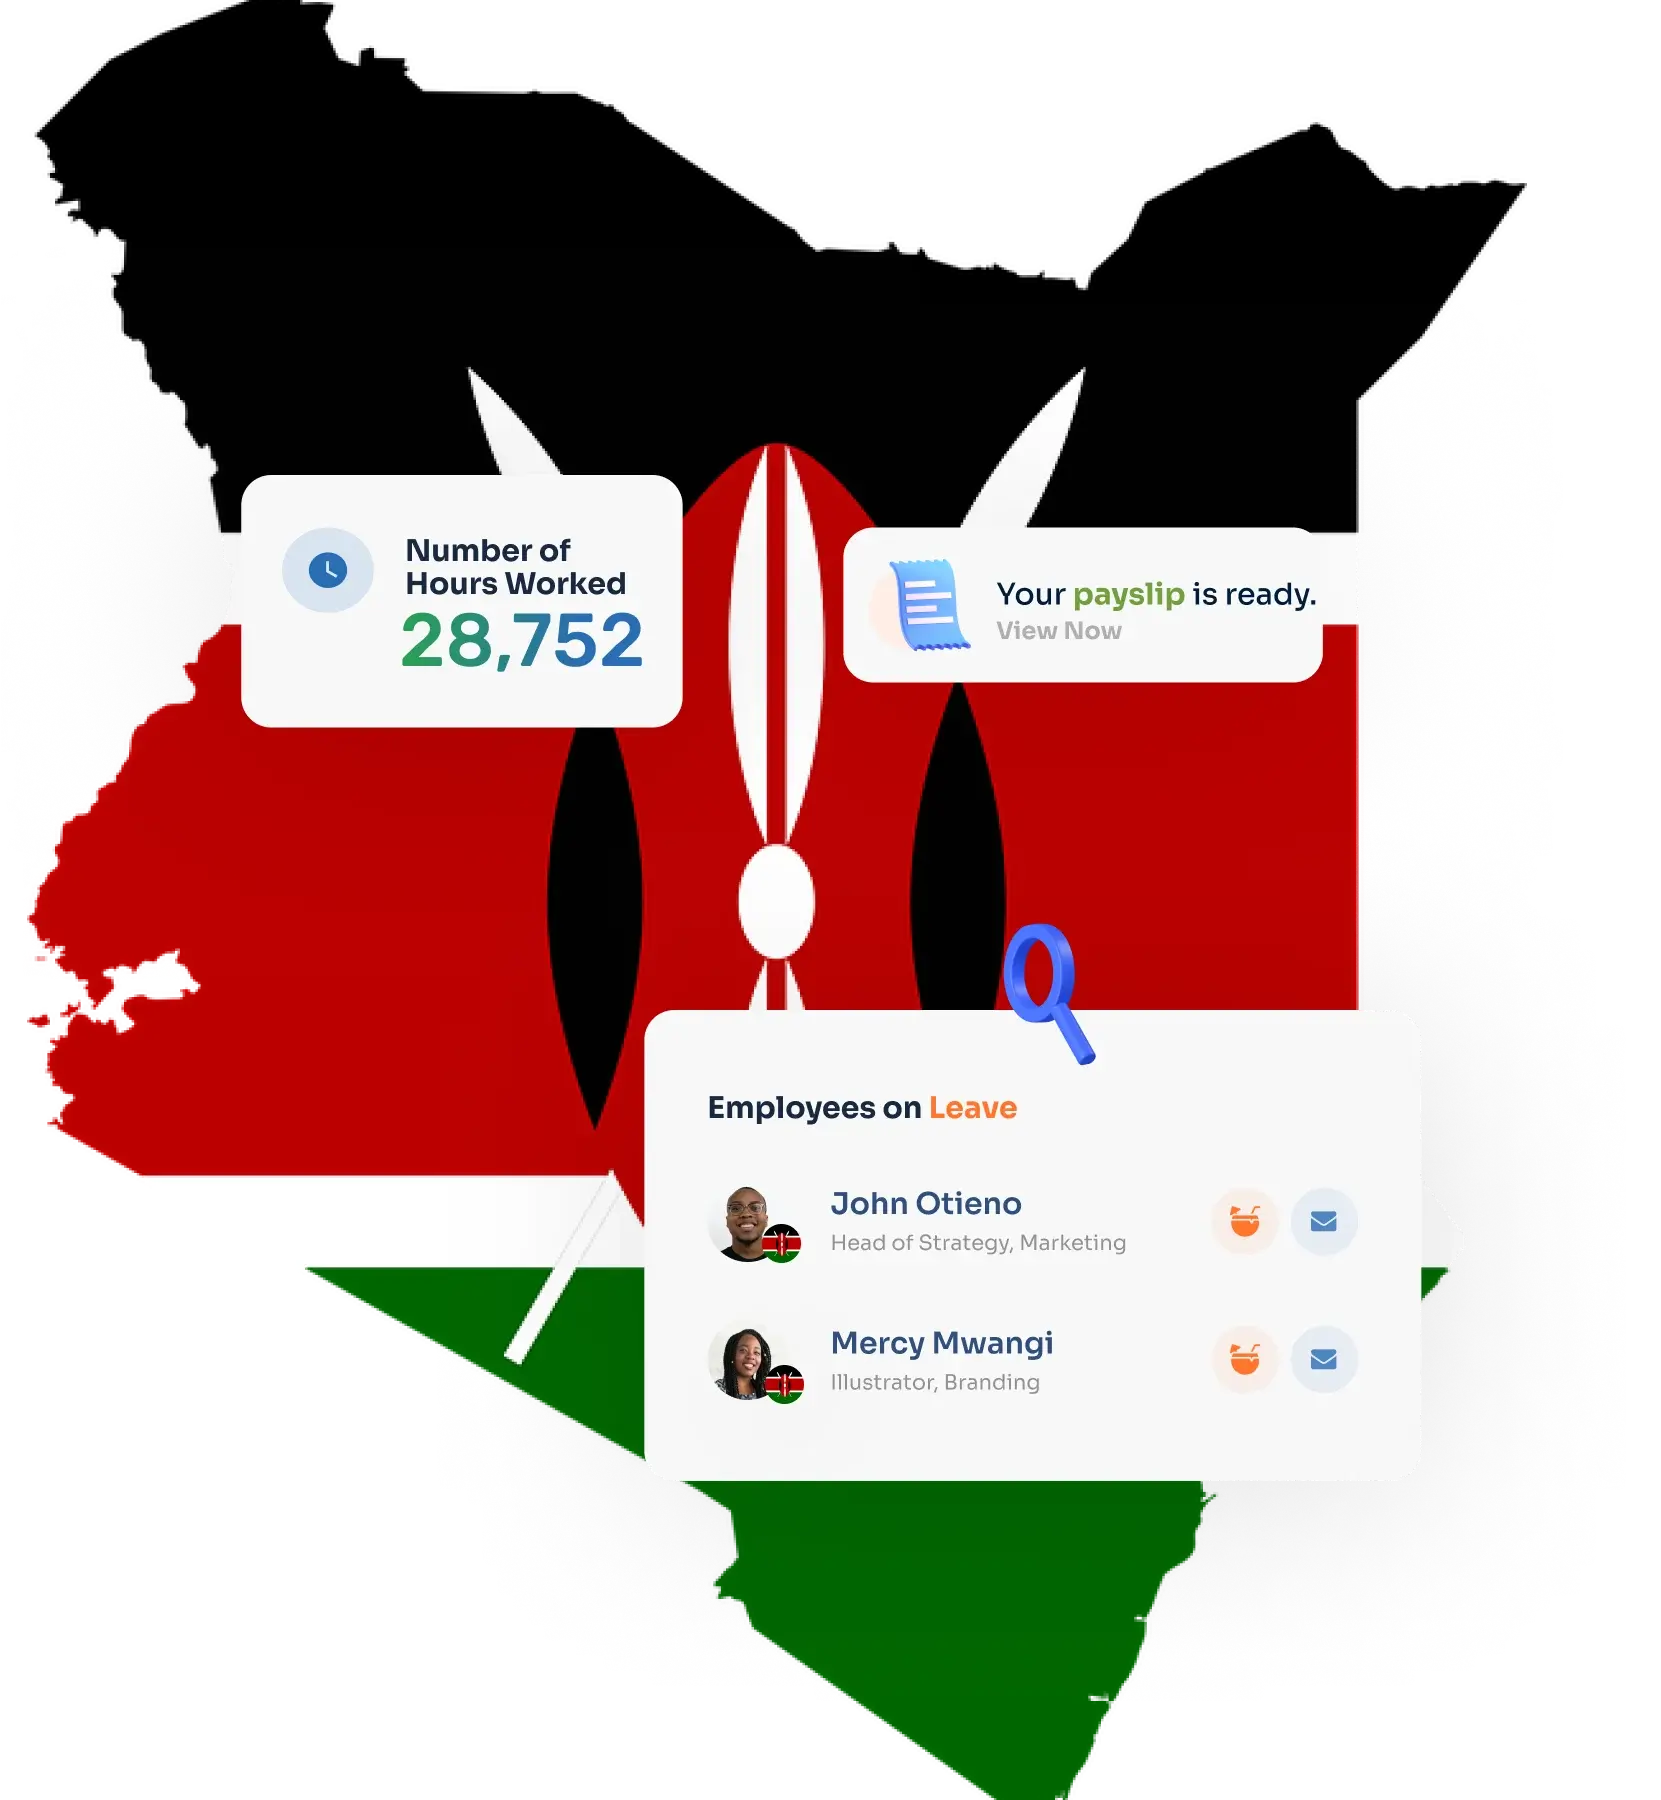 HR Software in Kenya